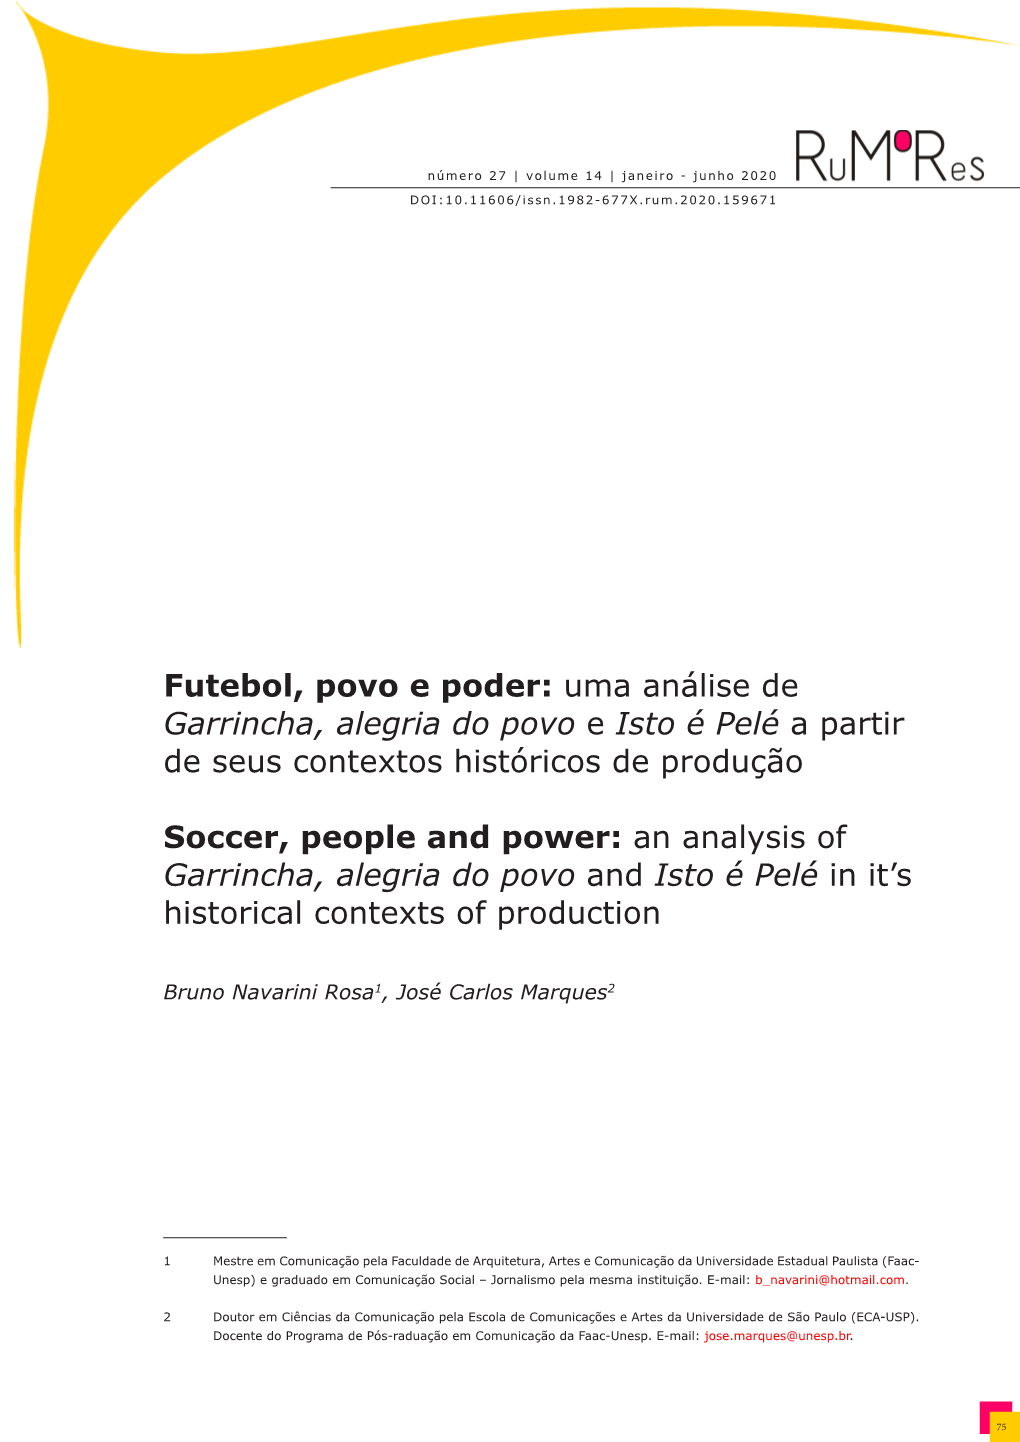 Futebol, Povo E Poder: Uma Análise De Garrincha, Alegria Do Povo E Isto É Pelé a Partir De Seus Contextos Históricos De Produção